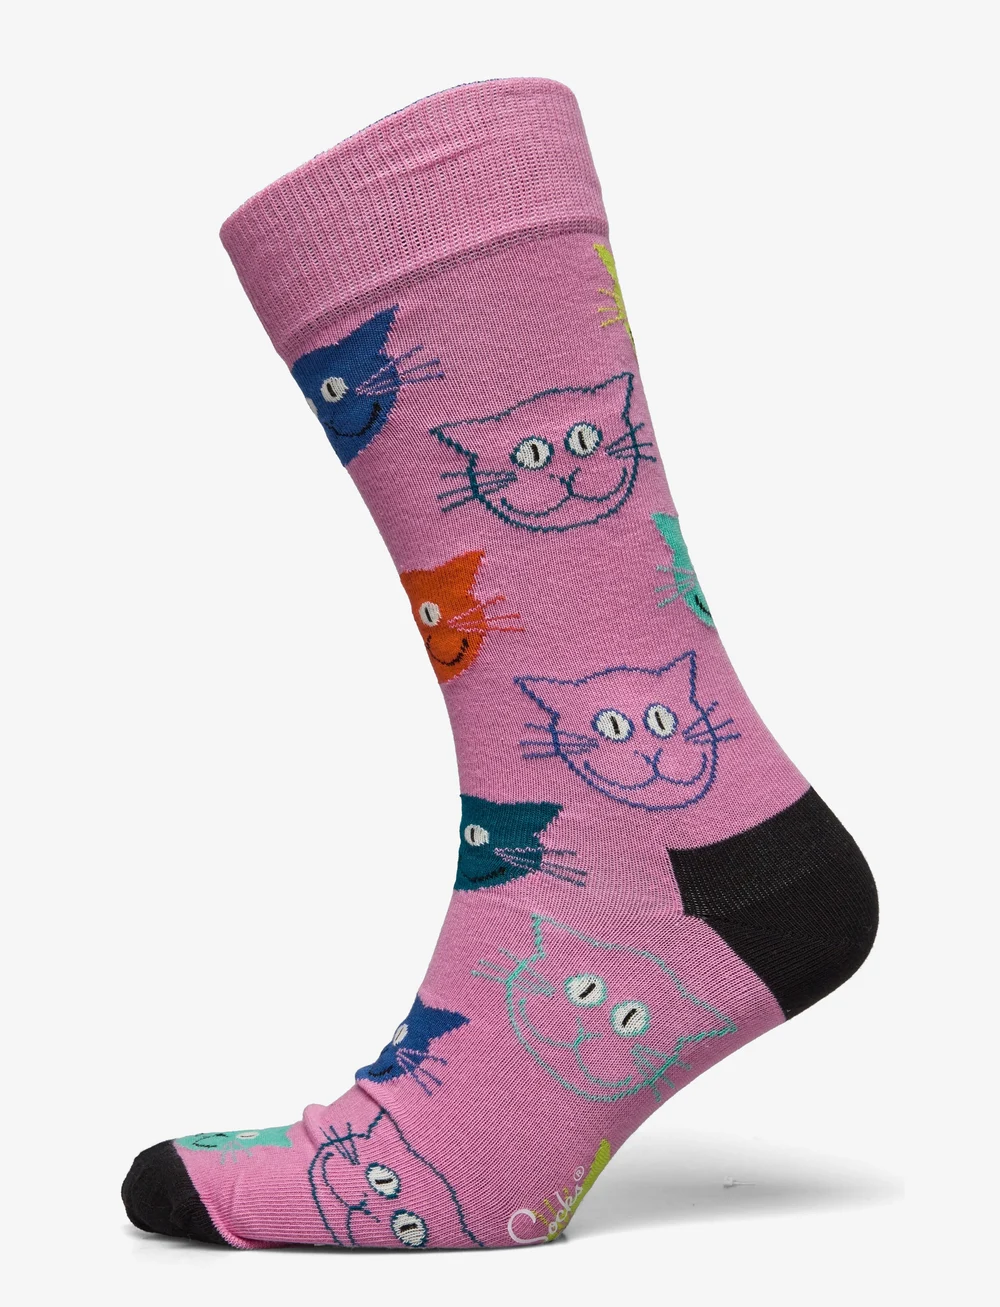 Happy Socks 3-pack Mixed Cat Socks Gift Set - Regular socks